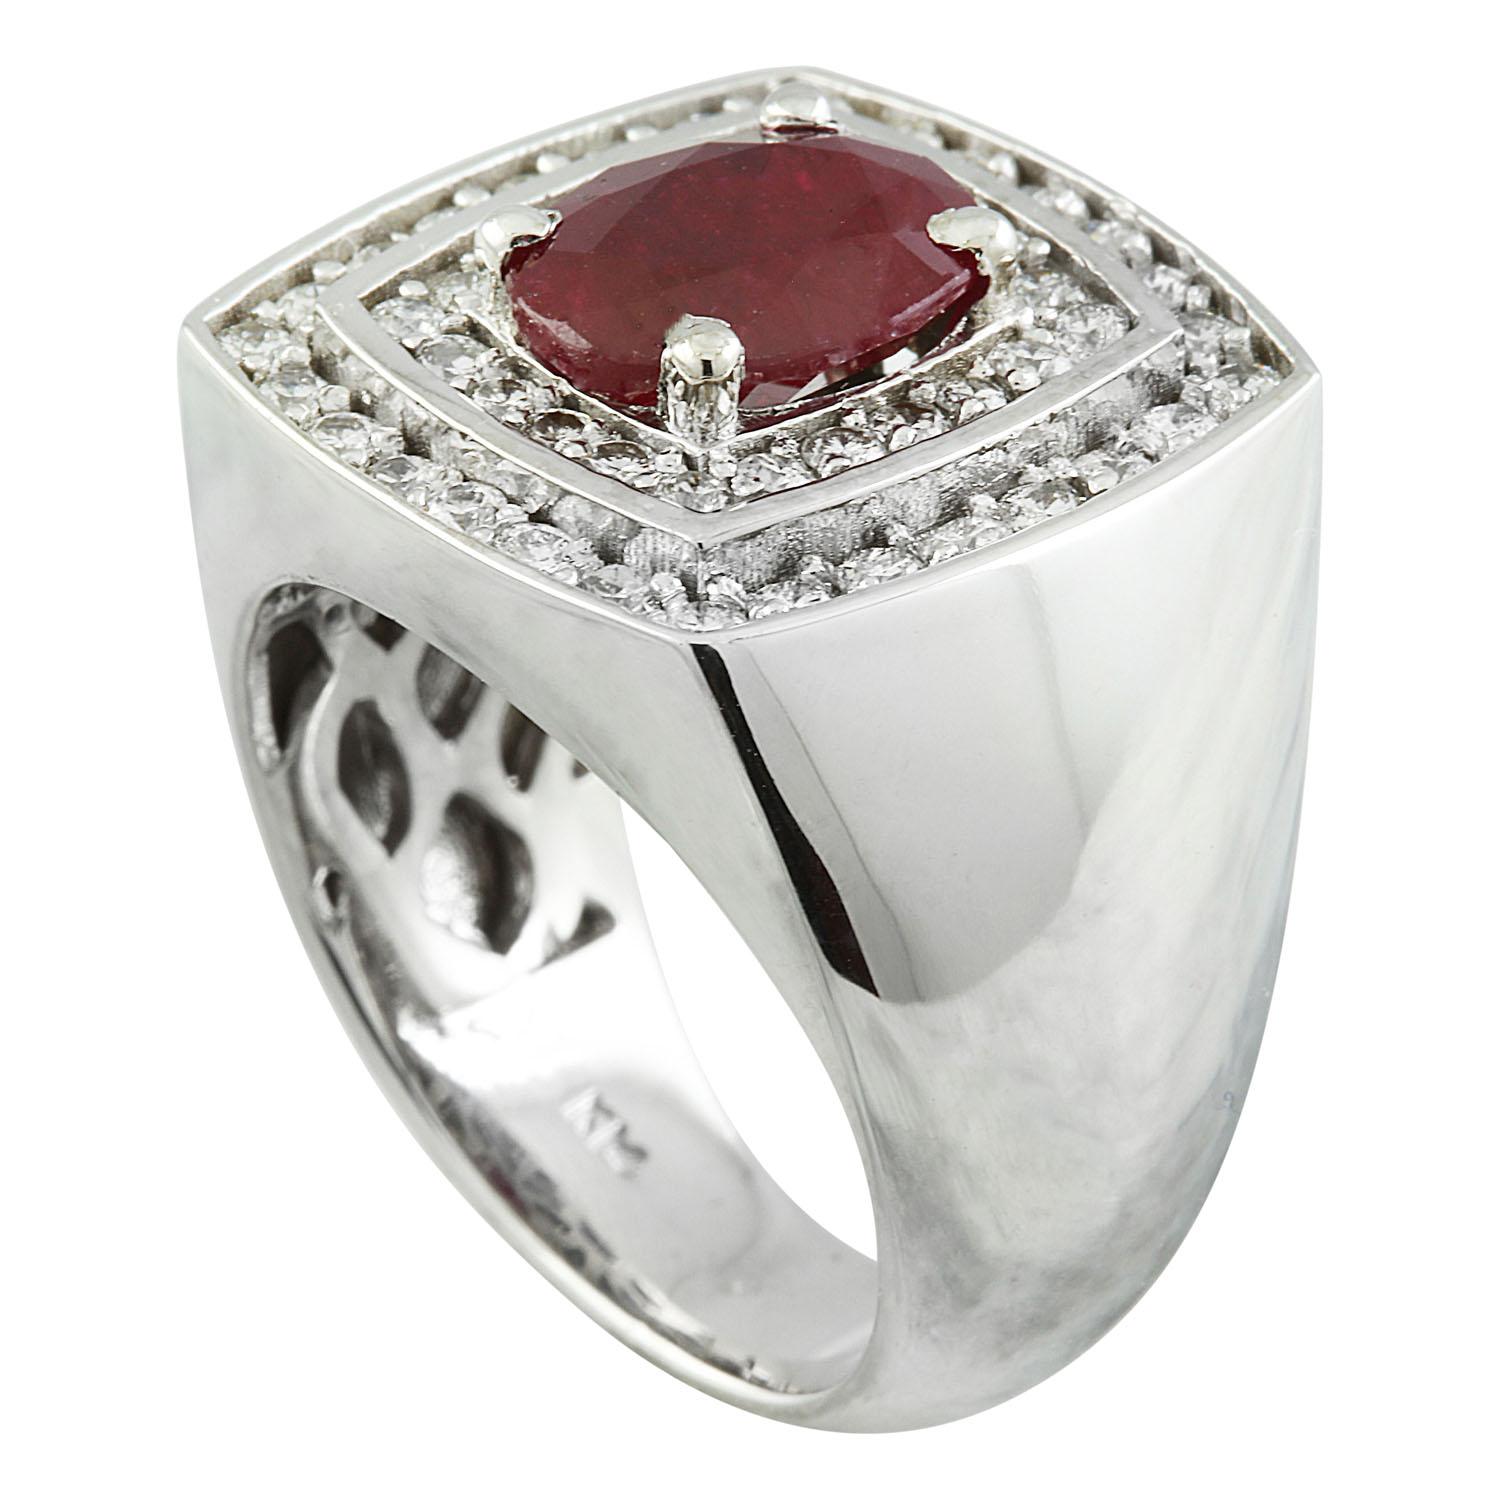 4.30 Carat Natural Ruby 14 Karat Solid White Gold Diamond Ring (bague en or blanc massif avec diamants)
Estampillé : 14K 
Poids total de l'anneau : 18 grammes
Poids du Rubis 3.20 Carat (10.00x8.00 Millimètres)
Poids du diamant : 1,10 carat (couleur